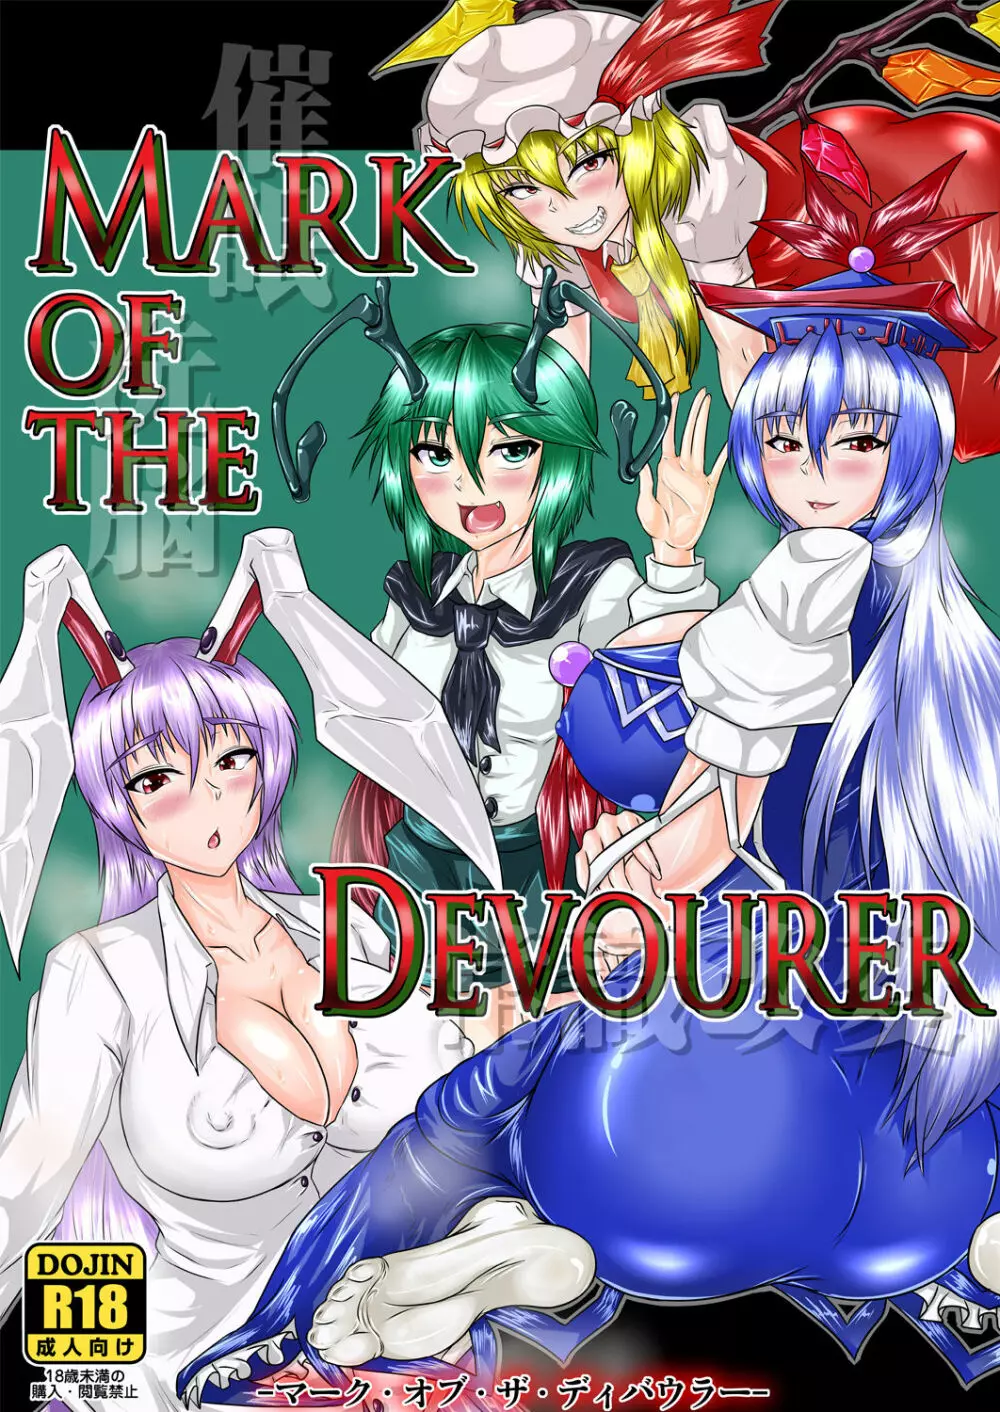 Mark of the Devourer